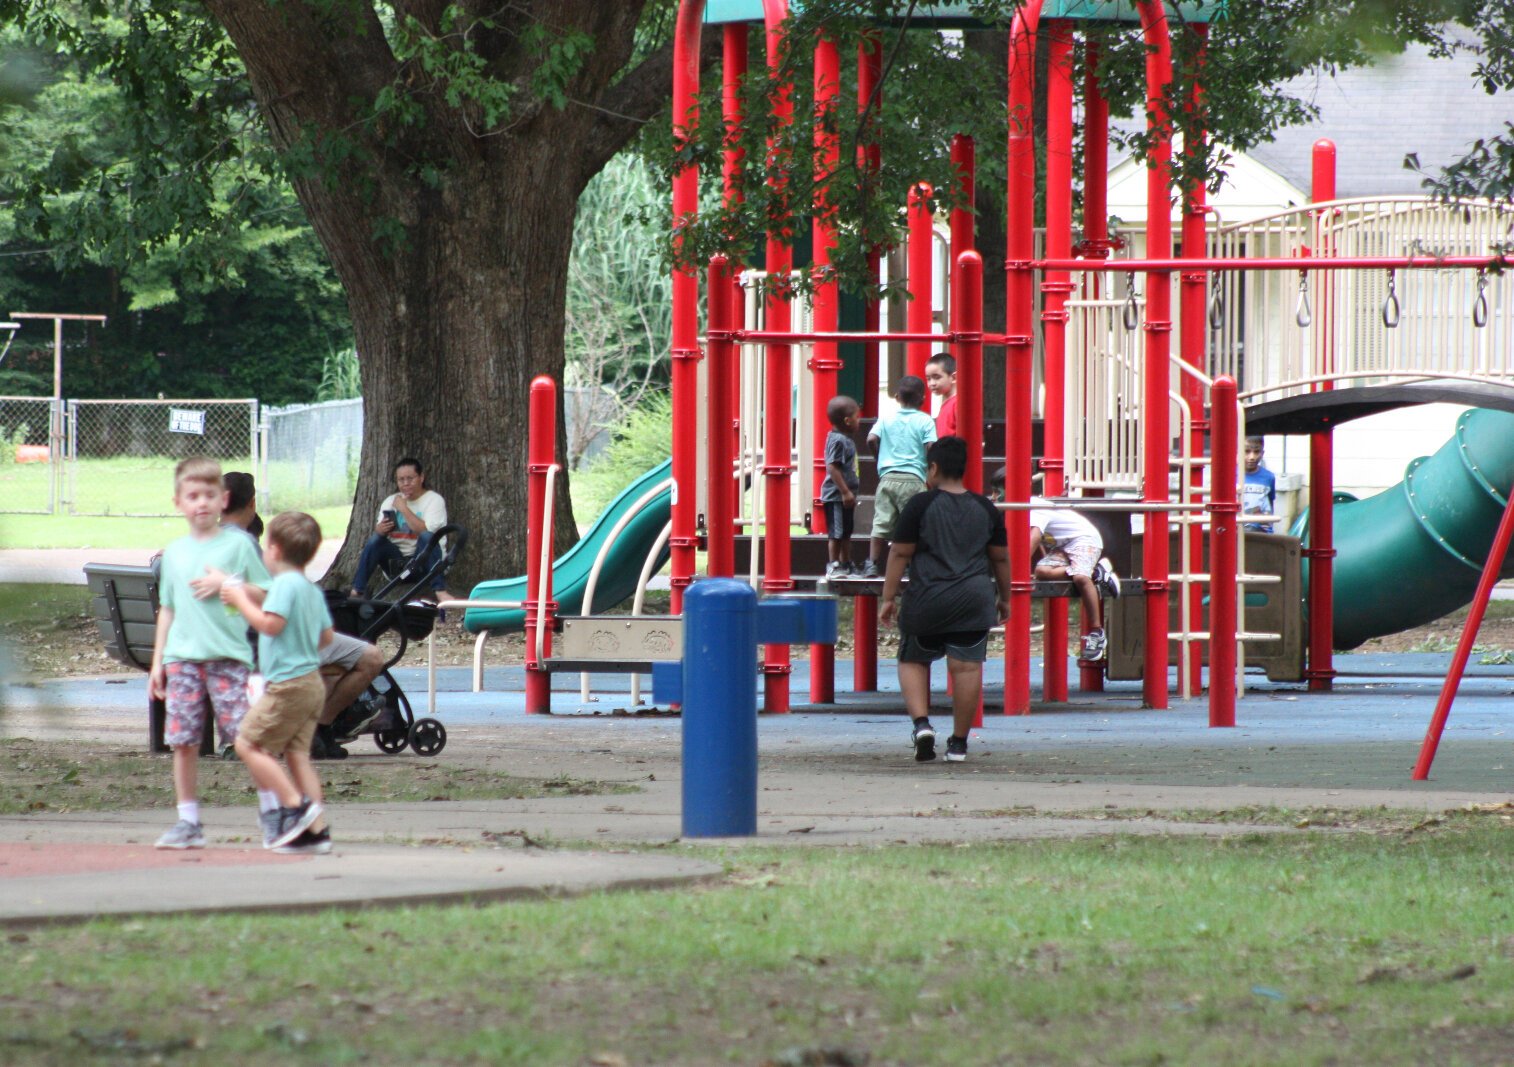 Children play at Gaisman Park, July 18 2021. (Meghan Aslin)